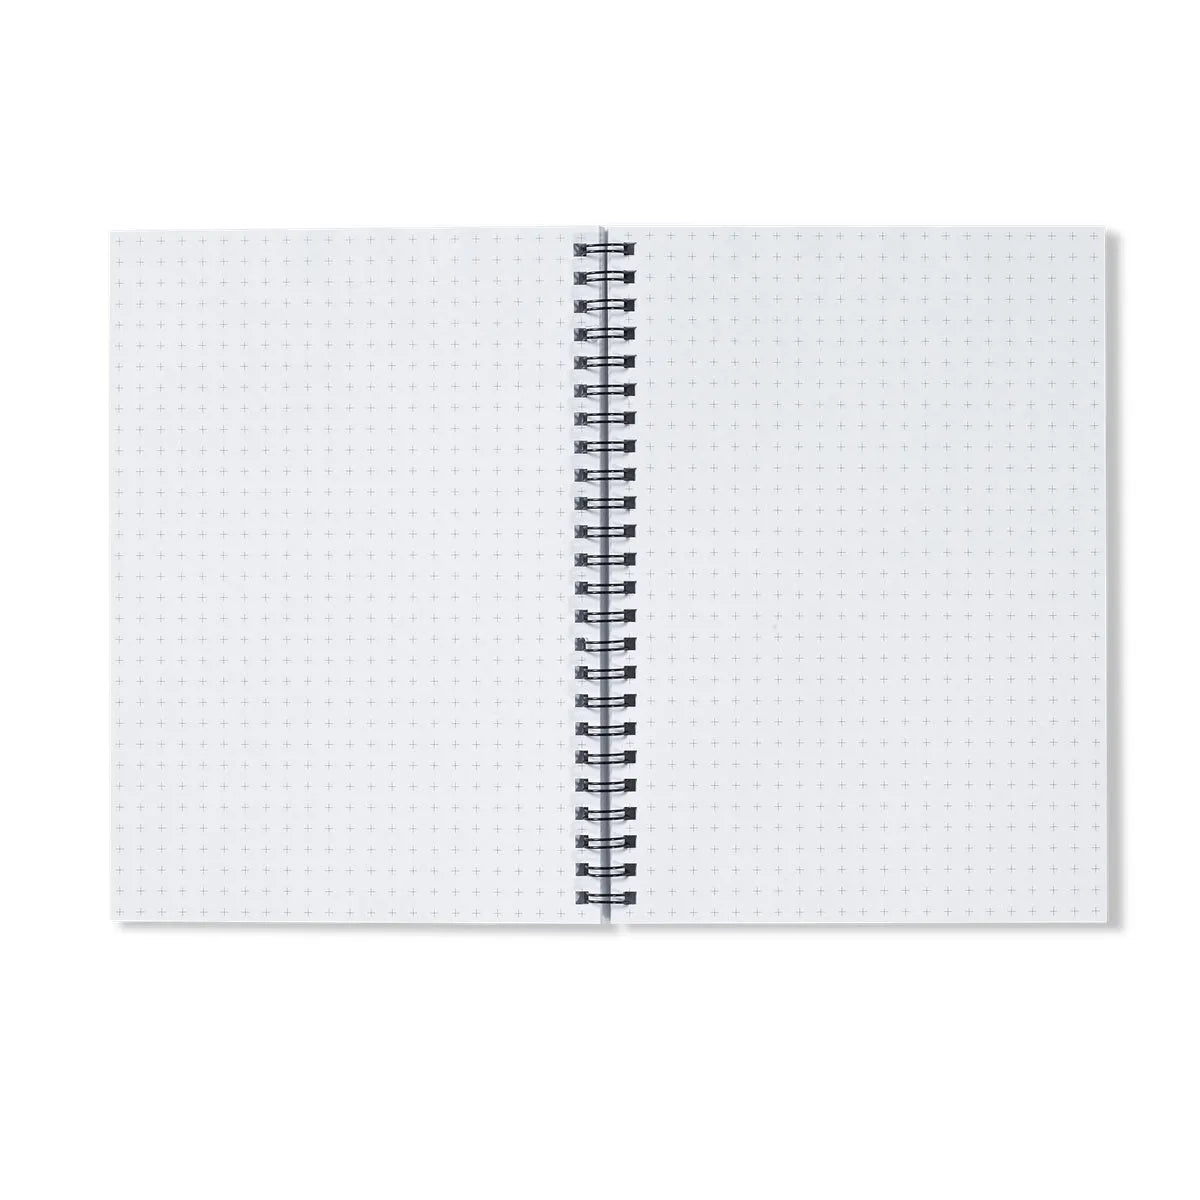 Flower Beds Notebook - Notebooks & Notepads - Aesthetic Art